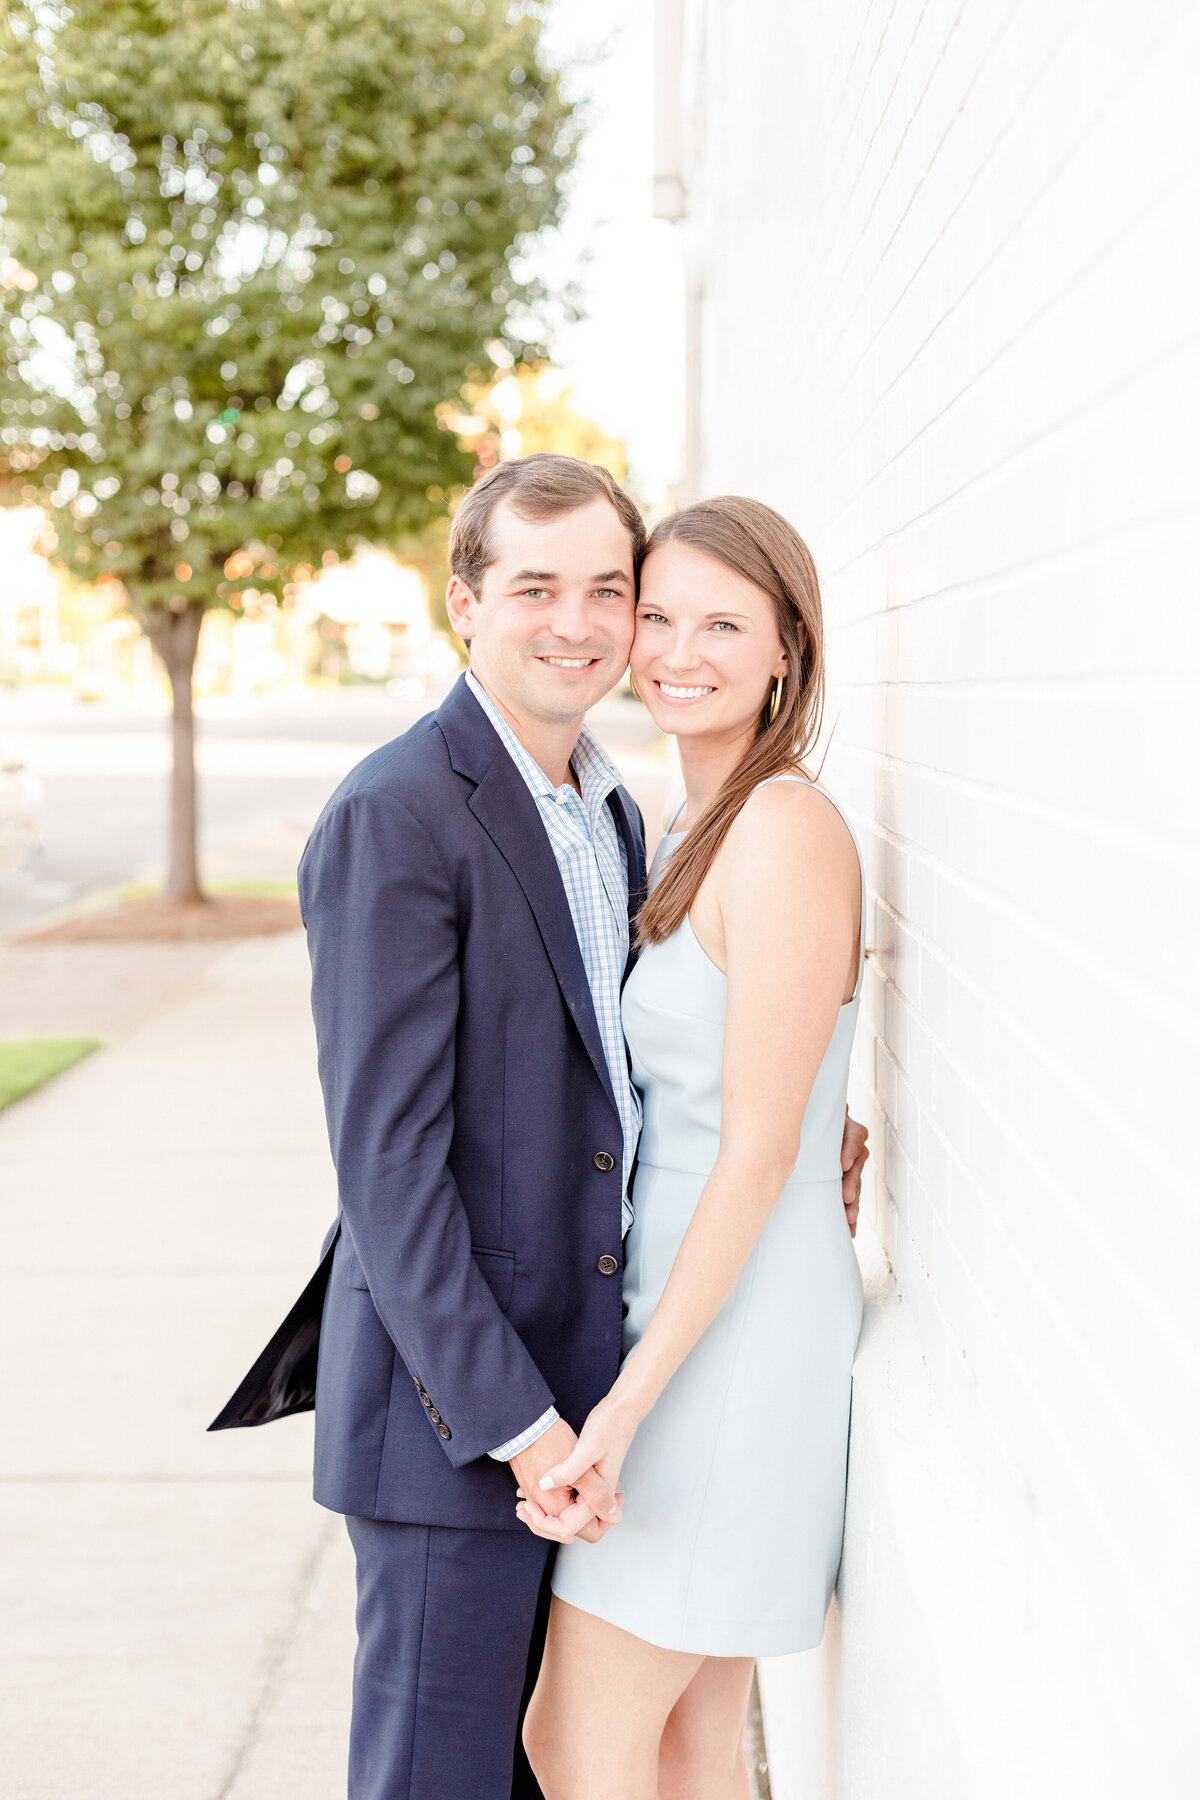 Birmingham, Alabama Wedding & Engagement Photographers - Katie & Alec Photography 17